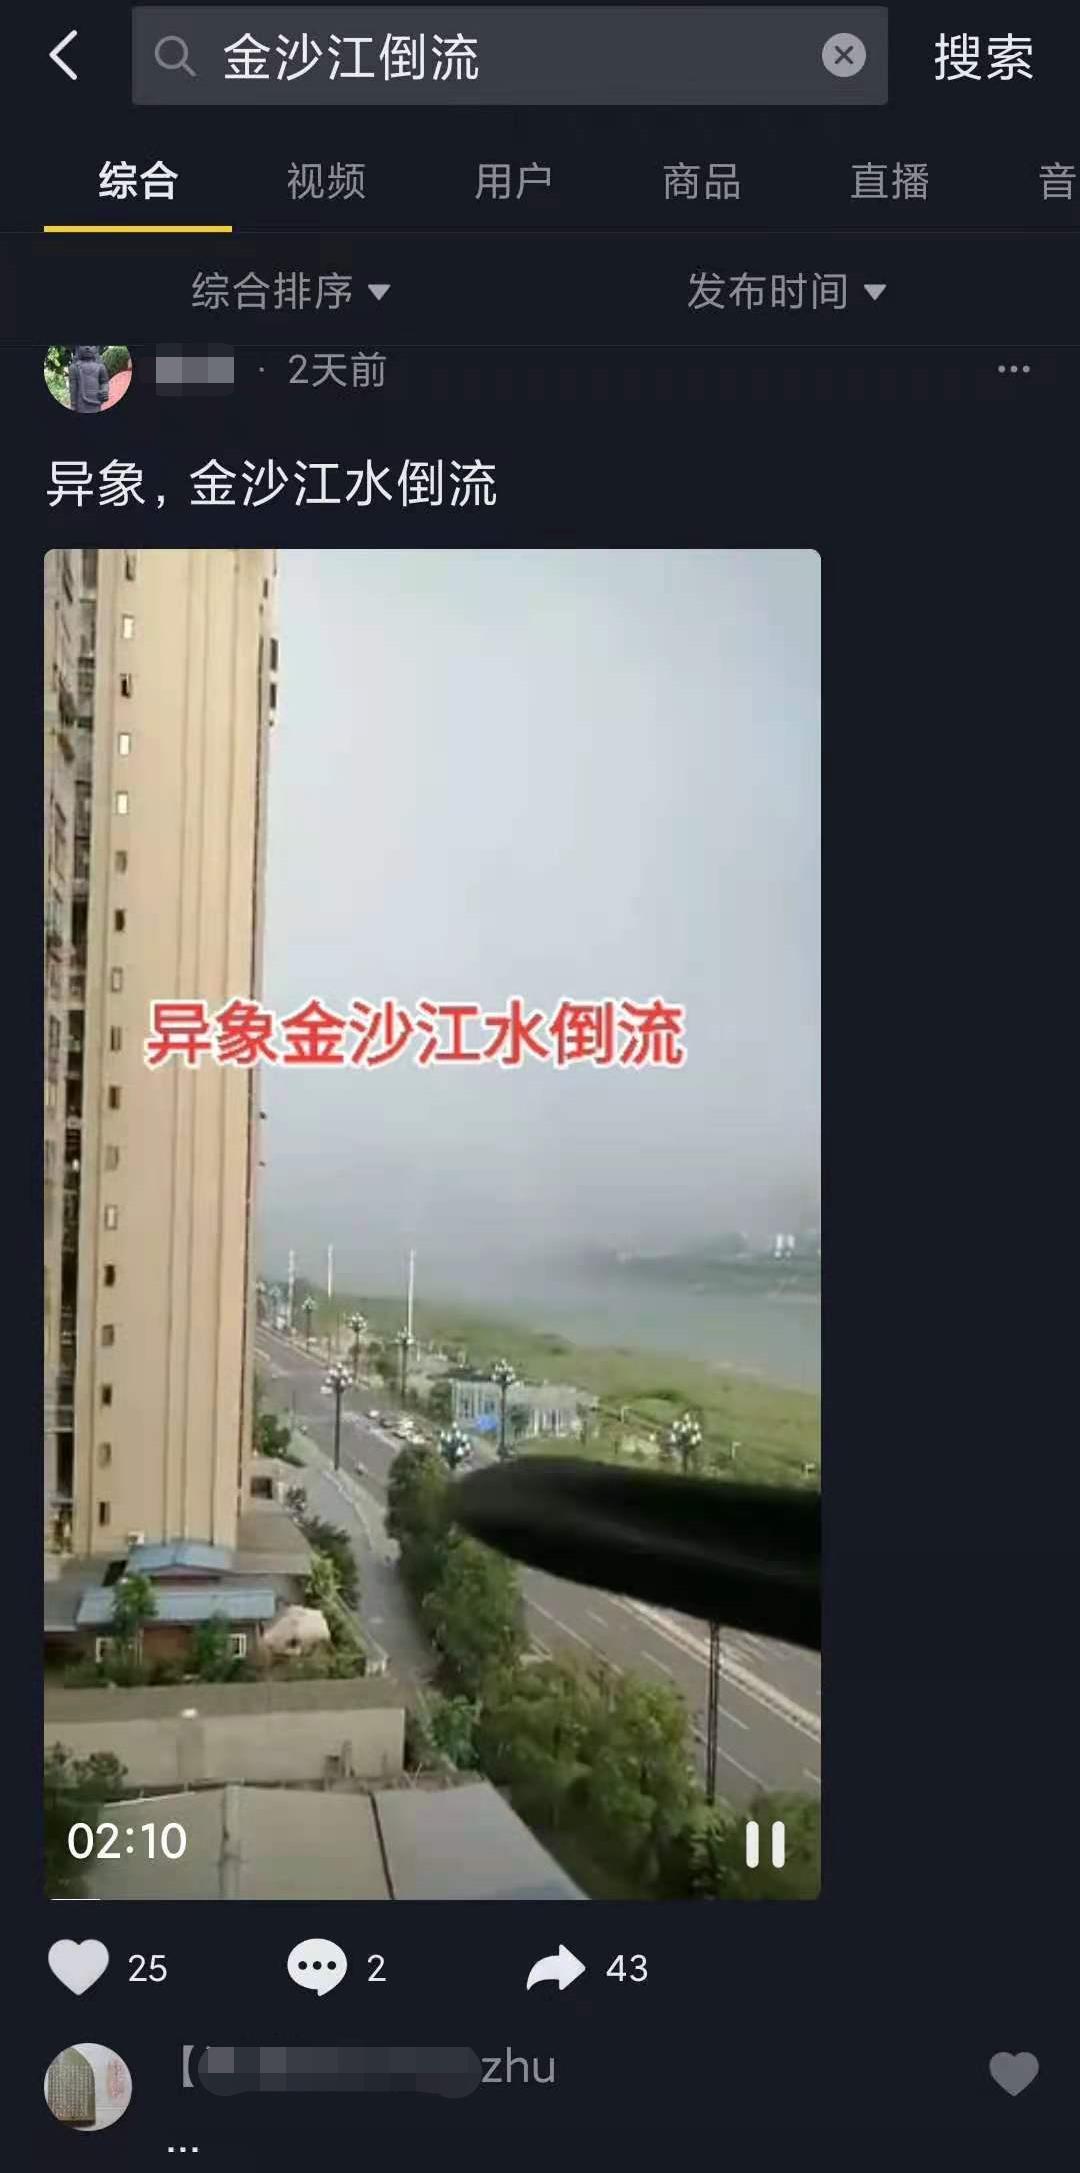 宜宾一市民发布视频称“金沙江一段水域出现逆流？” 水文专家：系暴雨引发“视觉错觉”